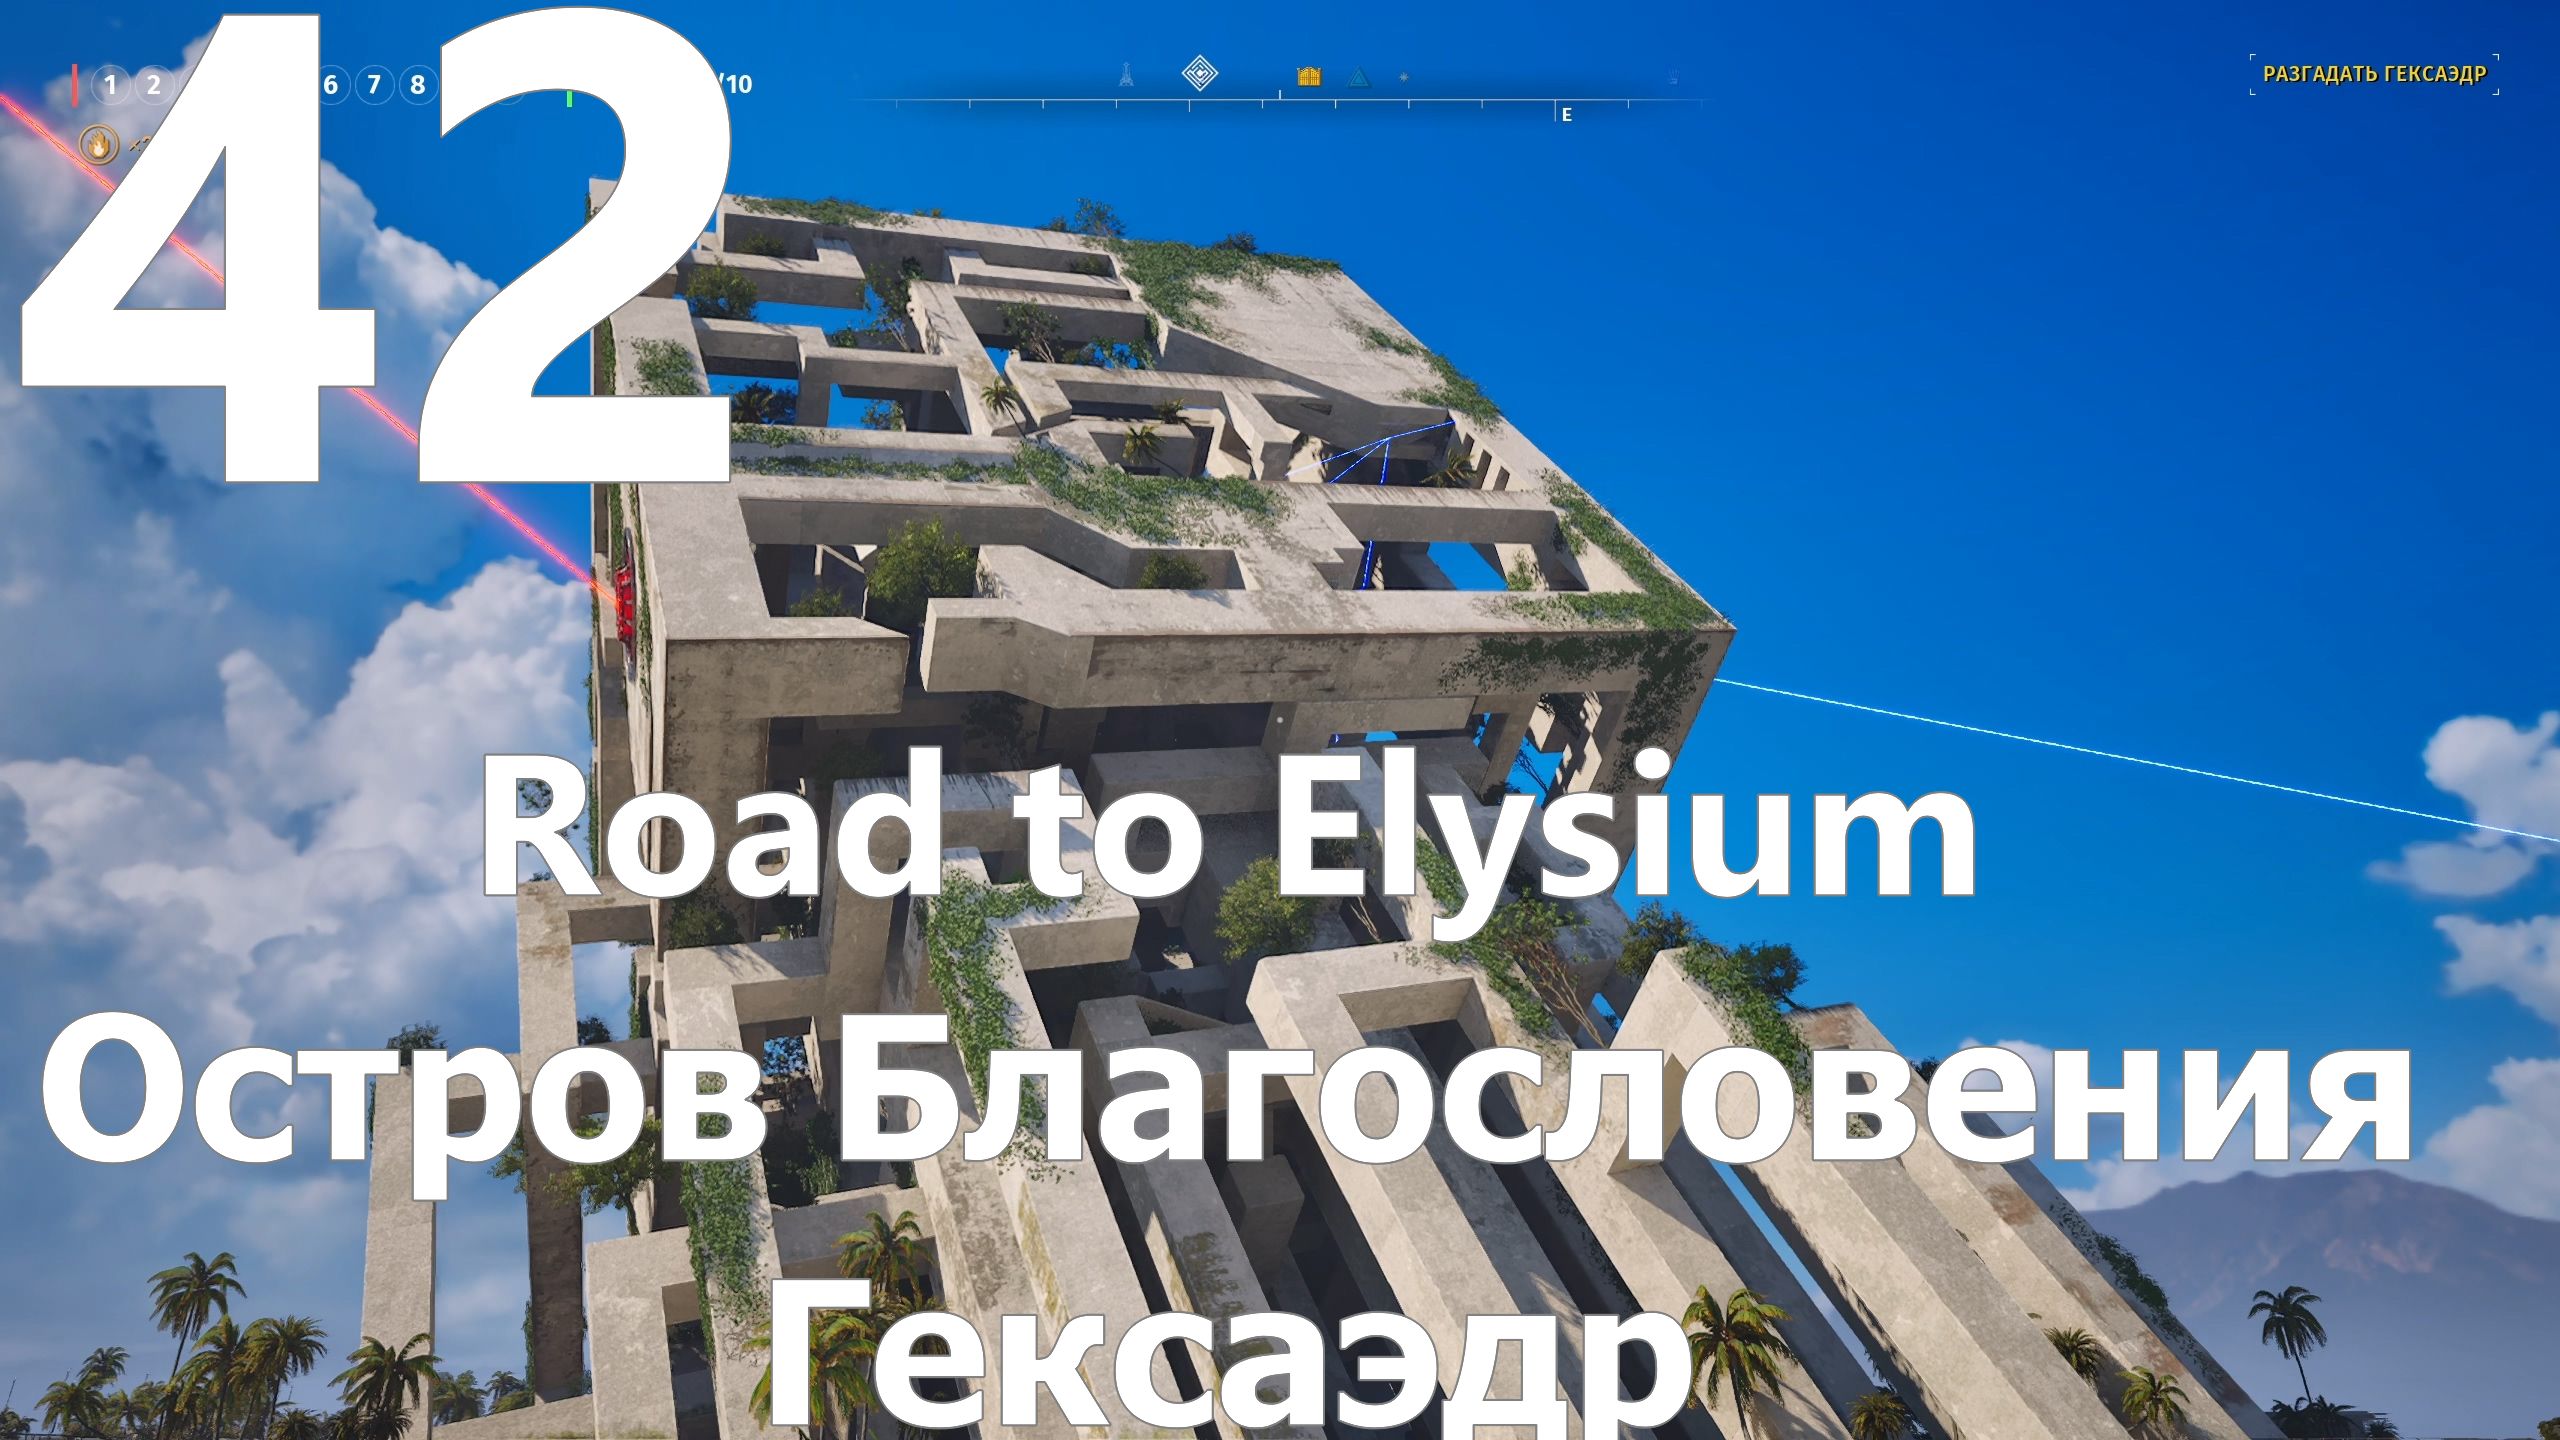 Прохождение игры The Talos Principle 2 №42 DLC Road to Elysium - Остров Благословения - Гексаэдр